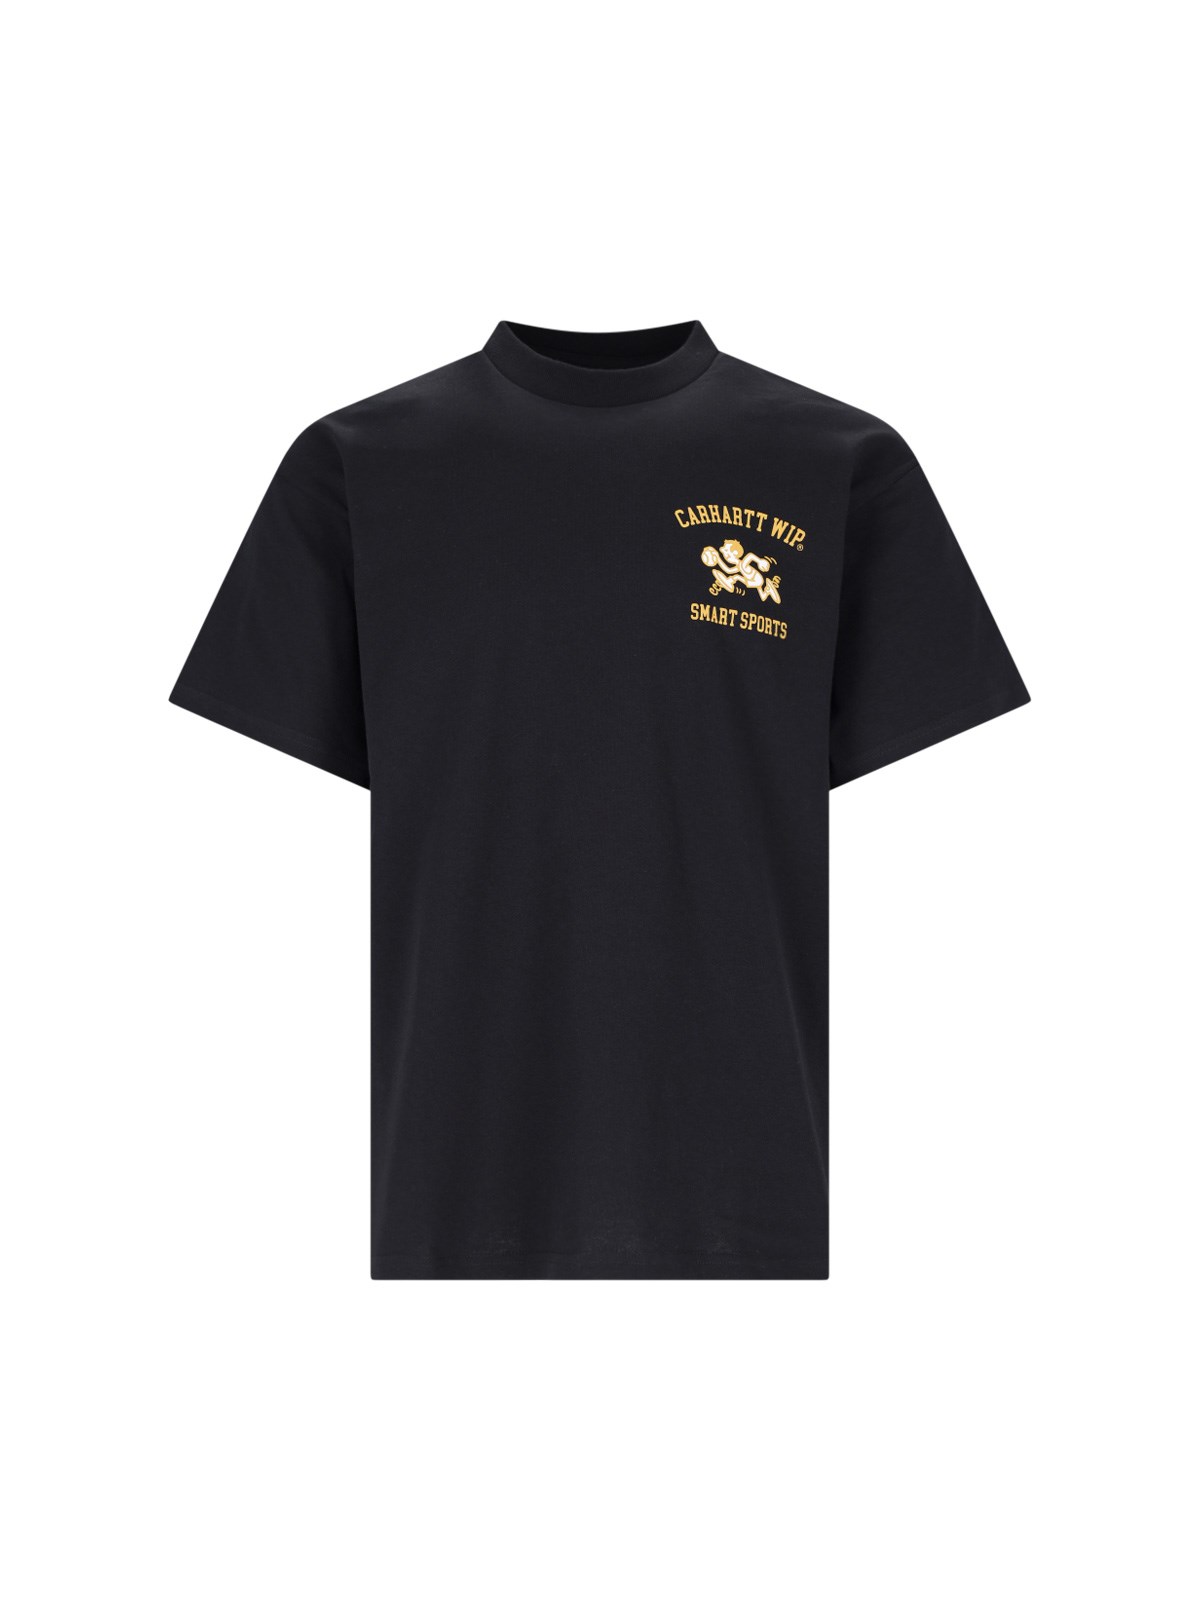 Carhartt Black 'smart Sports' T-shirt In Black  